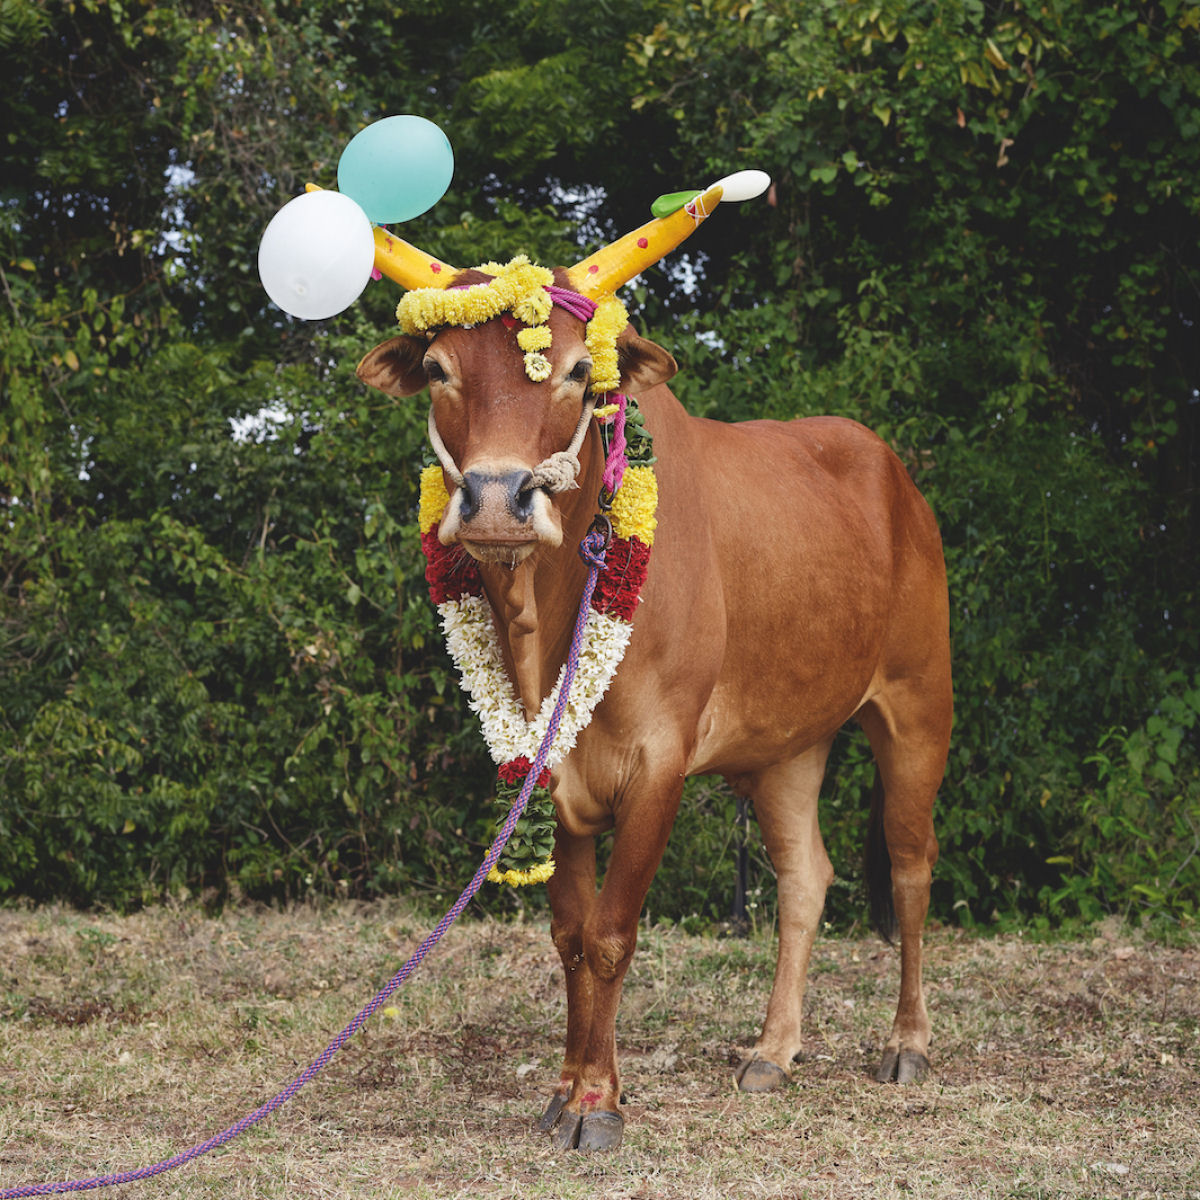 Fotografias fantsticas de vacas sagradas do Mundo 09